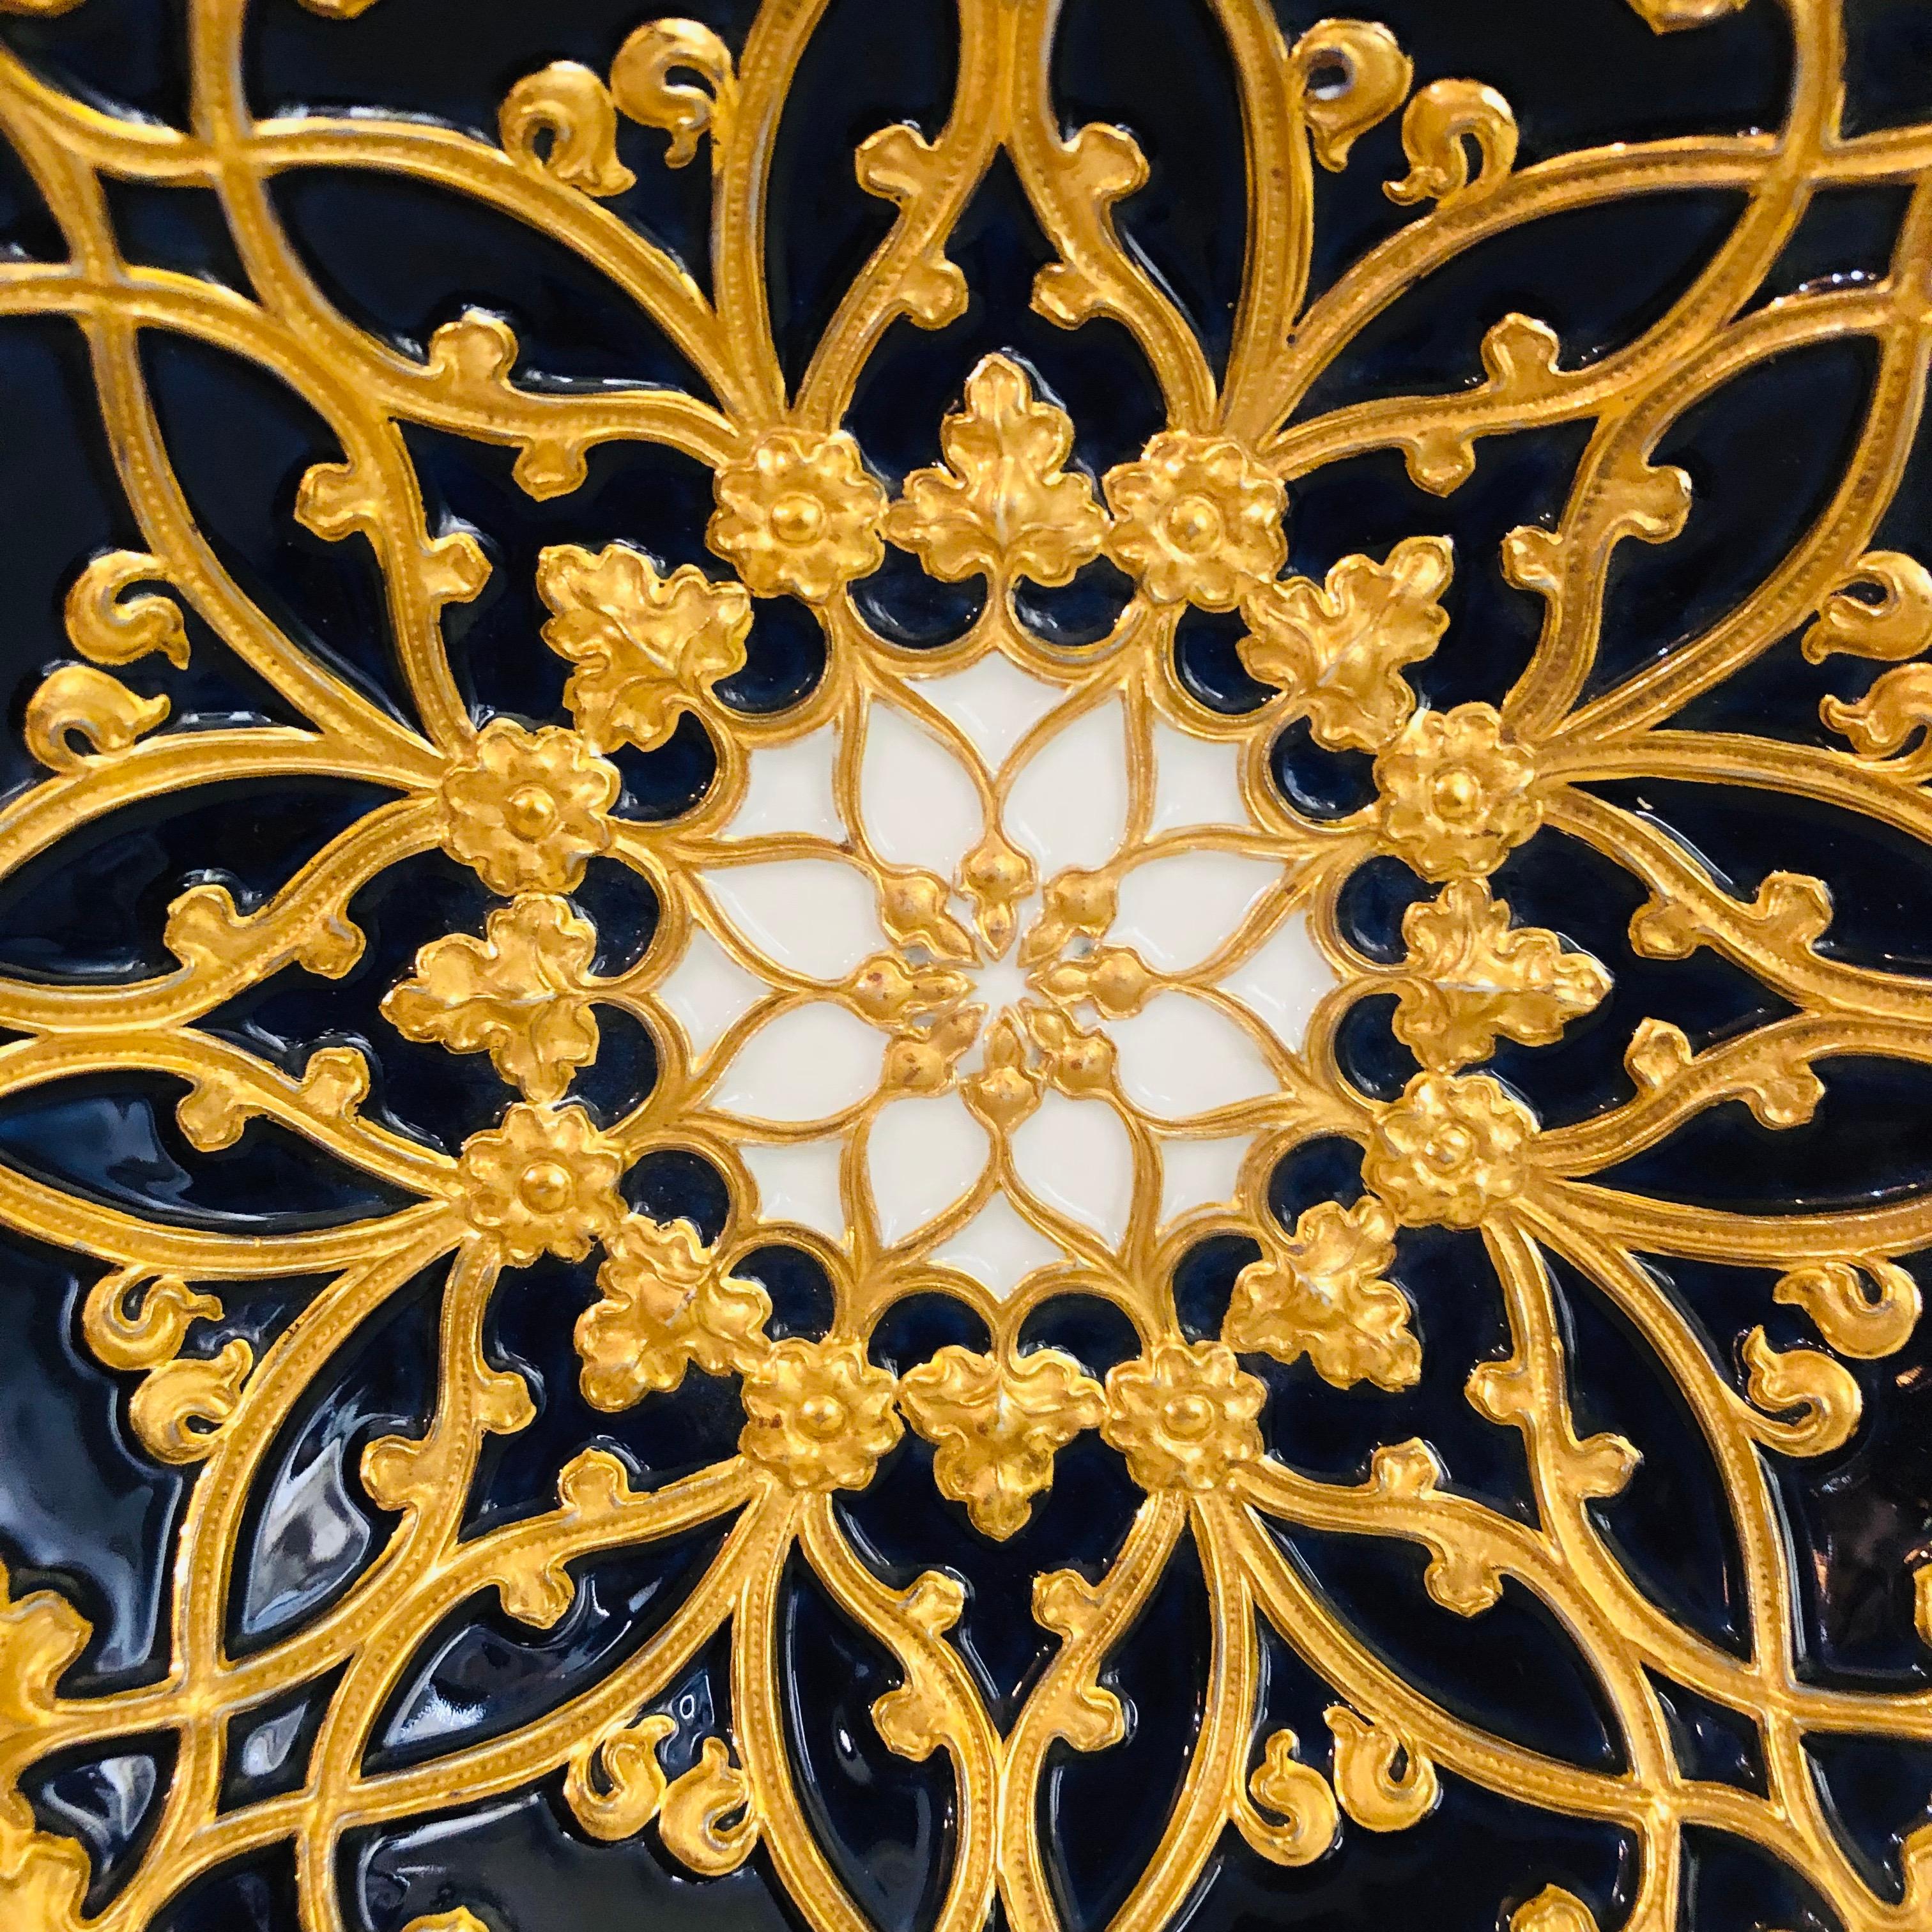 Meissener kobaltfarbener und goldener geriffelter Platzteller mit einer Umrandung aus goldenen Blättern aus den 1890er Jahren (Spätes 19. Jahrhundert)